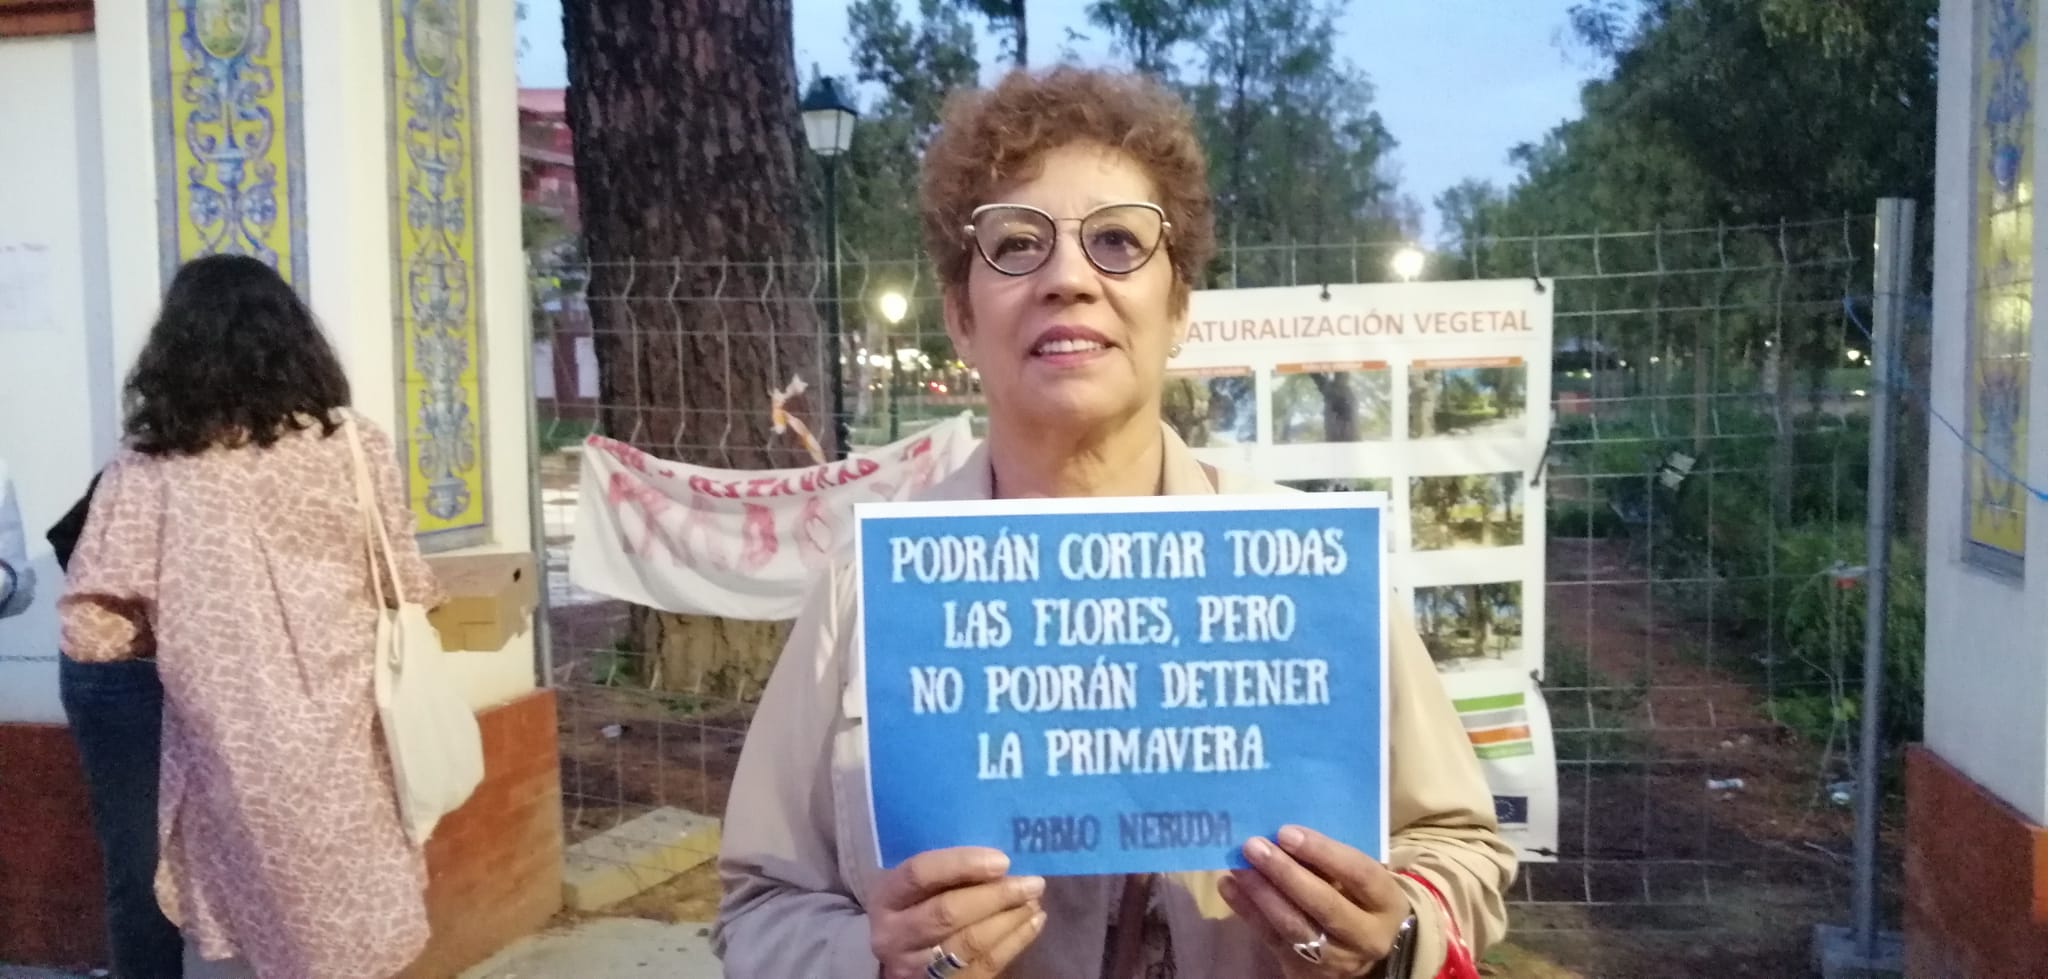 Una protesta ciudadana marca el primer día de las fiestas de Talavera de la Reina: "El Prado no se pierde, el Prado se defiende"